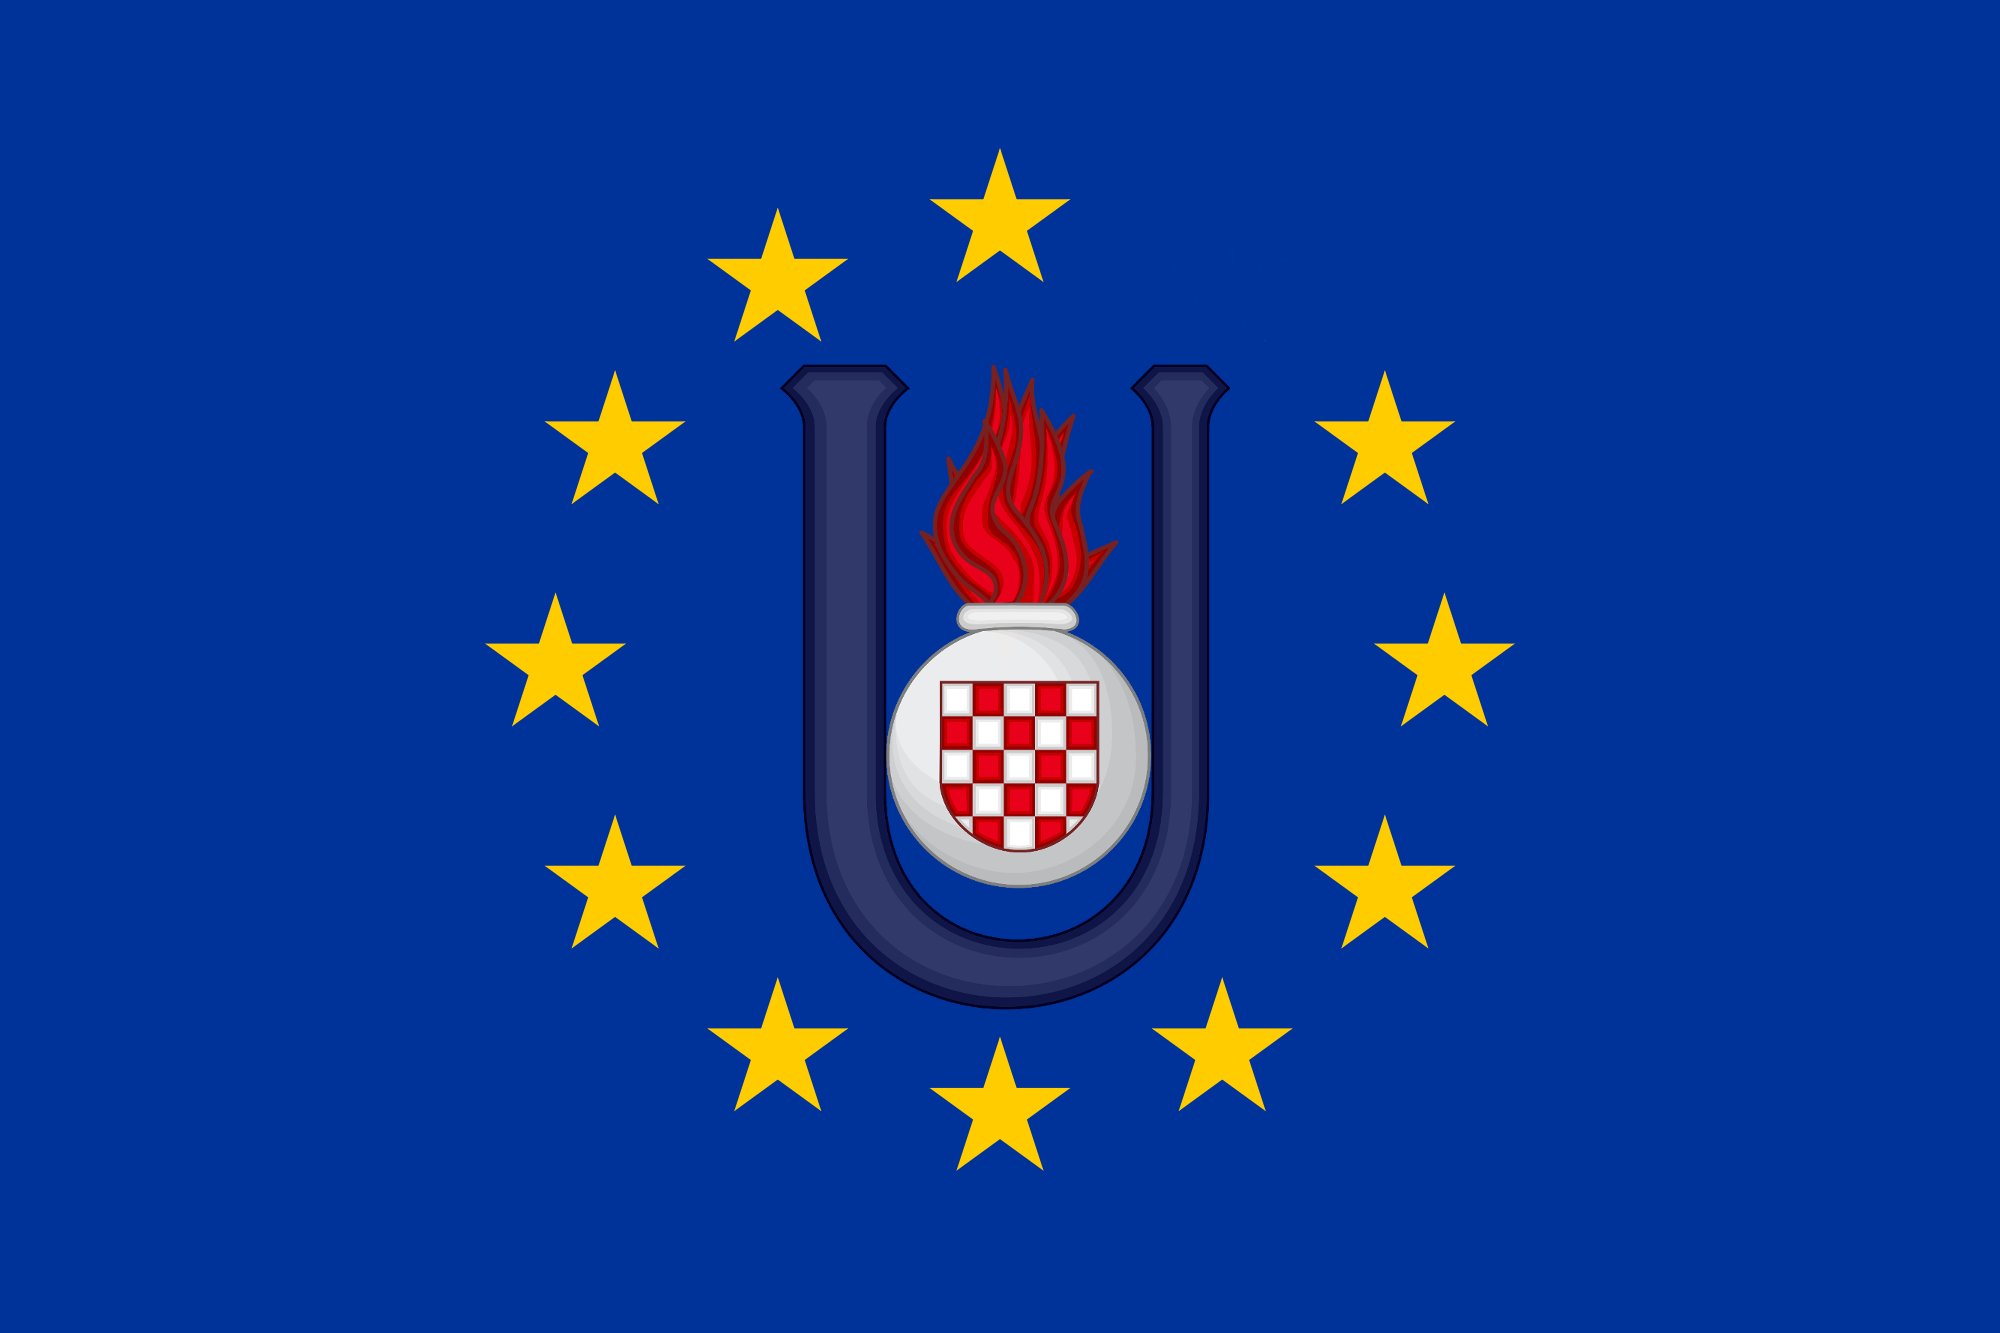 ЕУ од Србије тражи да Хрватској преда земљу све до предграђа Апатина!